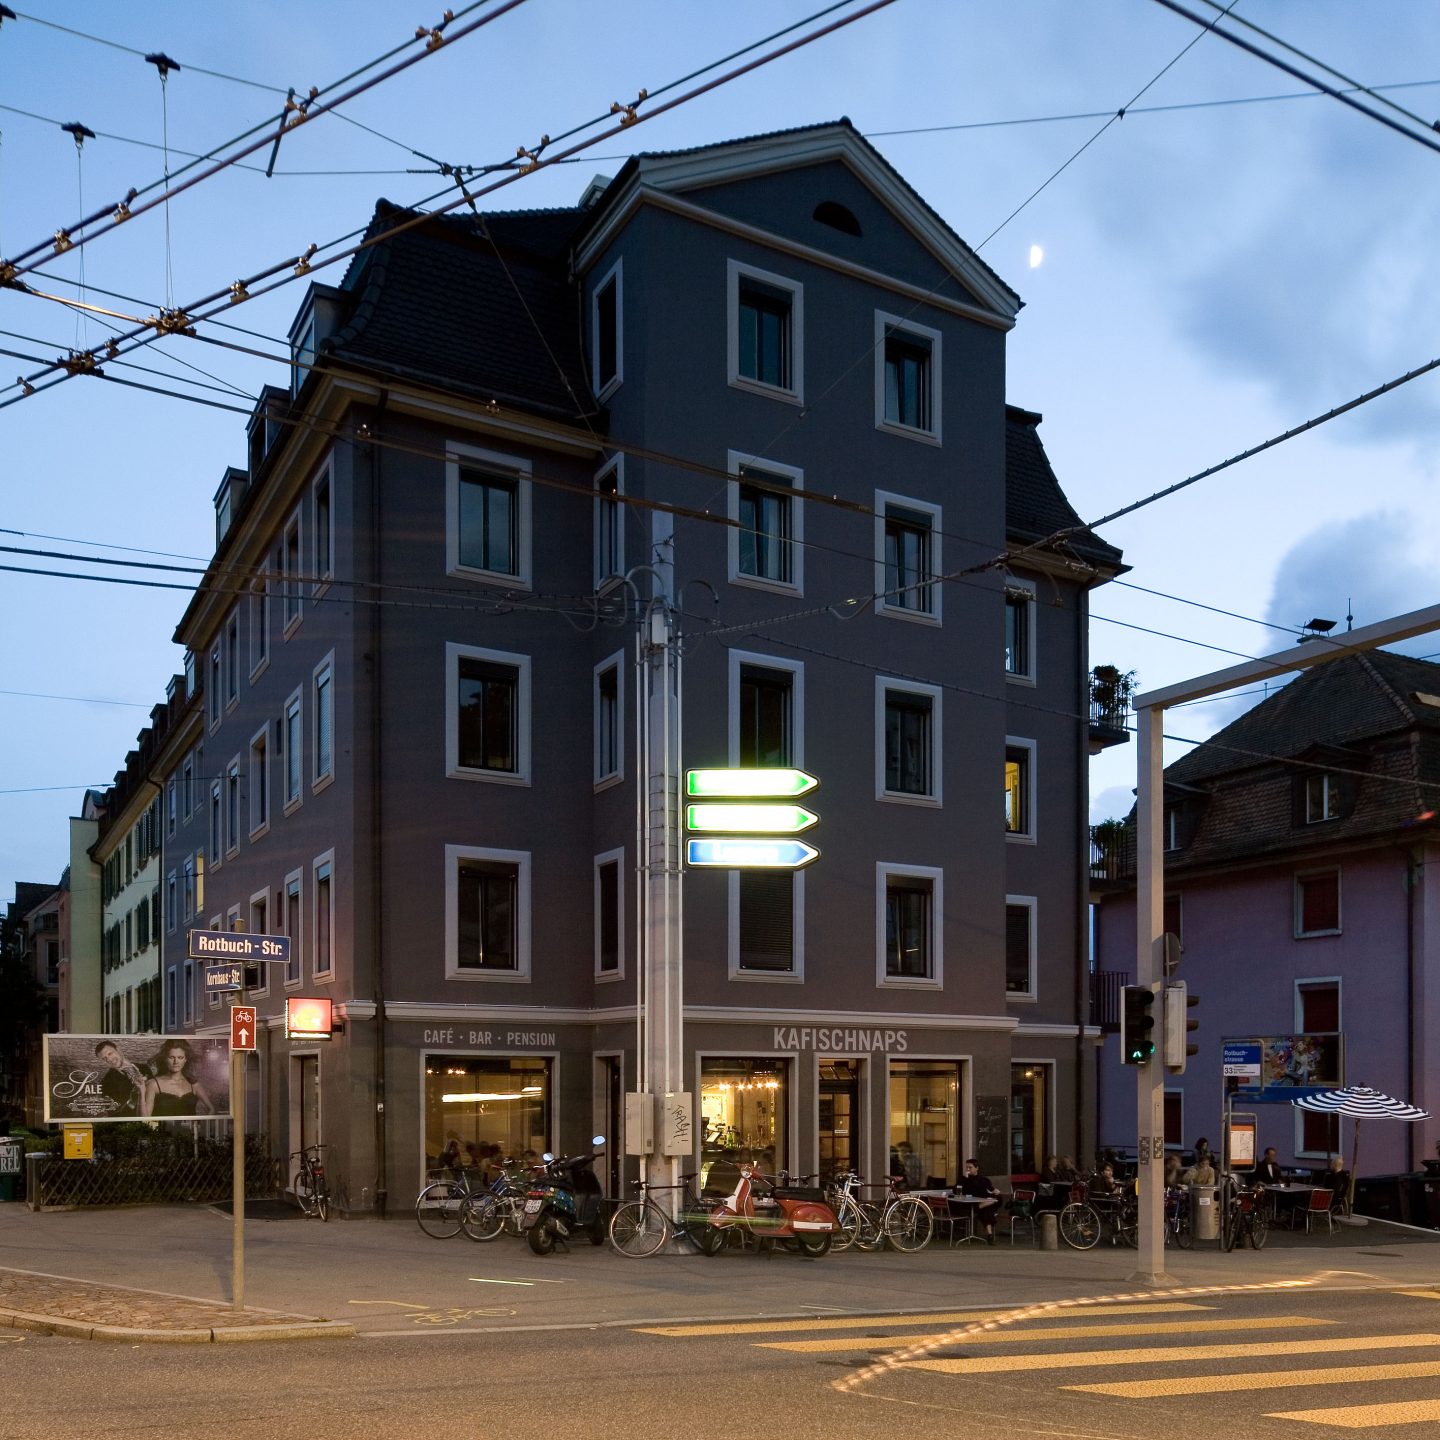 Kafischnaps, Zürich, ZH. Hildebrand Studios AG, Architecture and Urban Design in Zurich, Switzerland